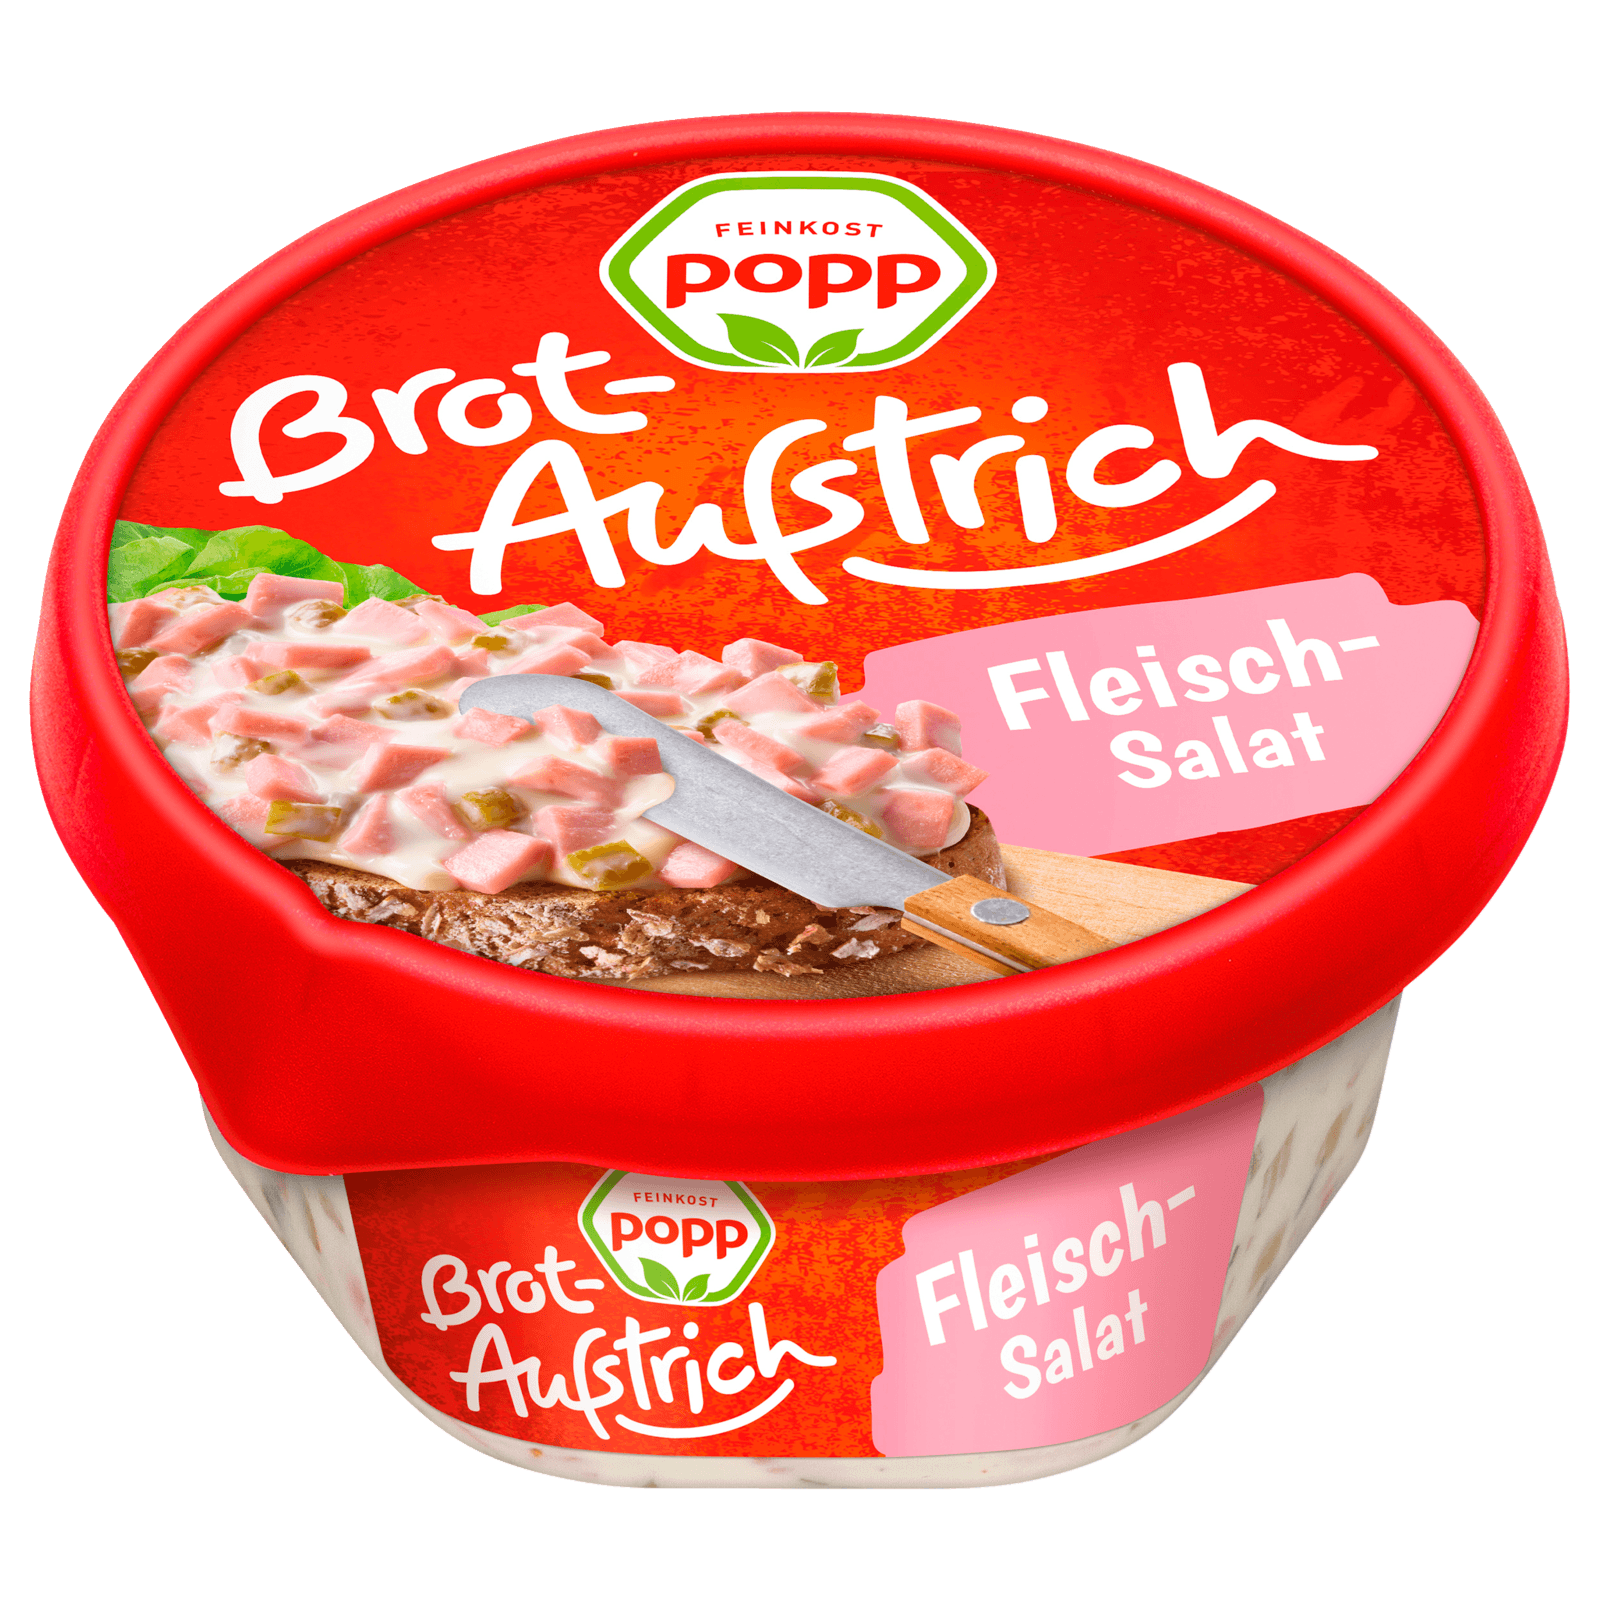 Delikatess Lidl XXL von Chef Select Fleischsalat 1,69€ für